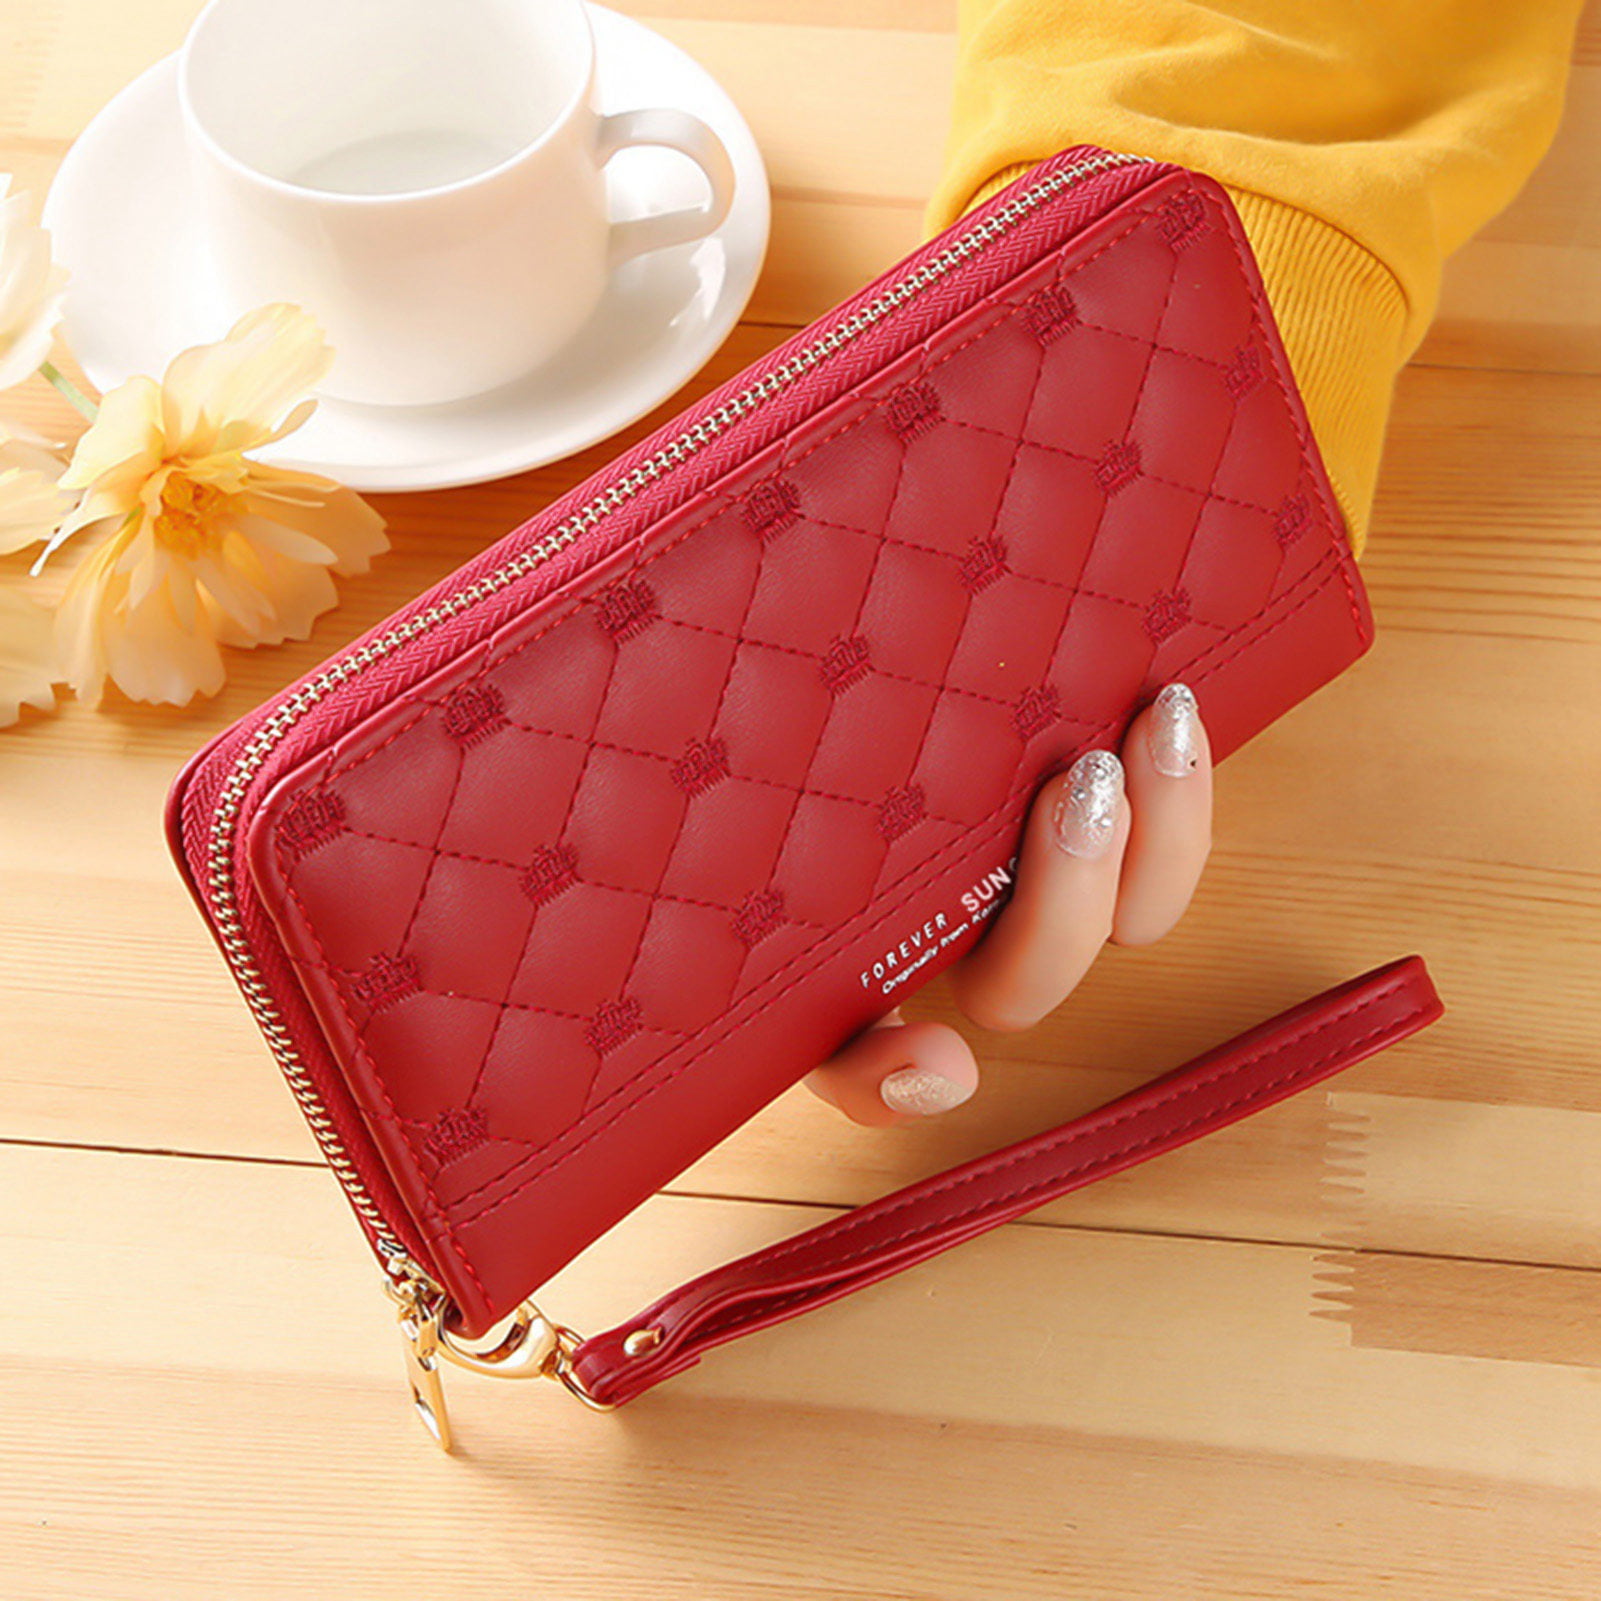 ♡ Breakfast at Shawna's ♡ | Bags, Pink handbags, Pink bag